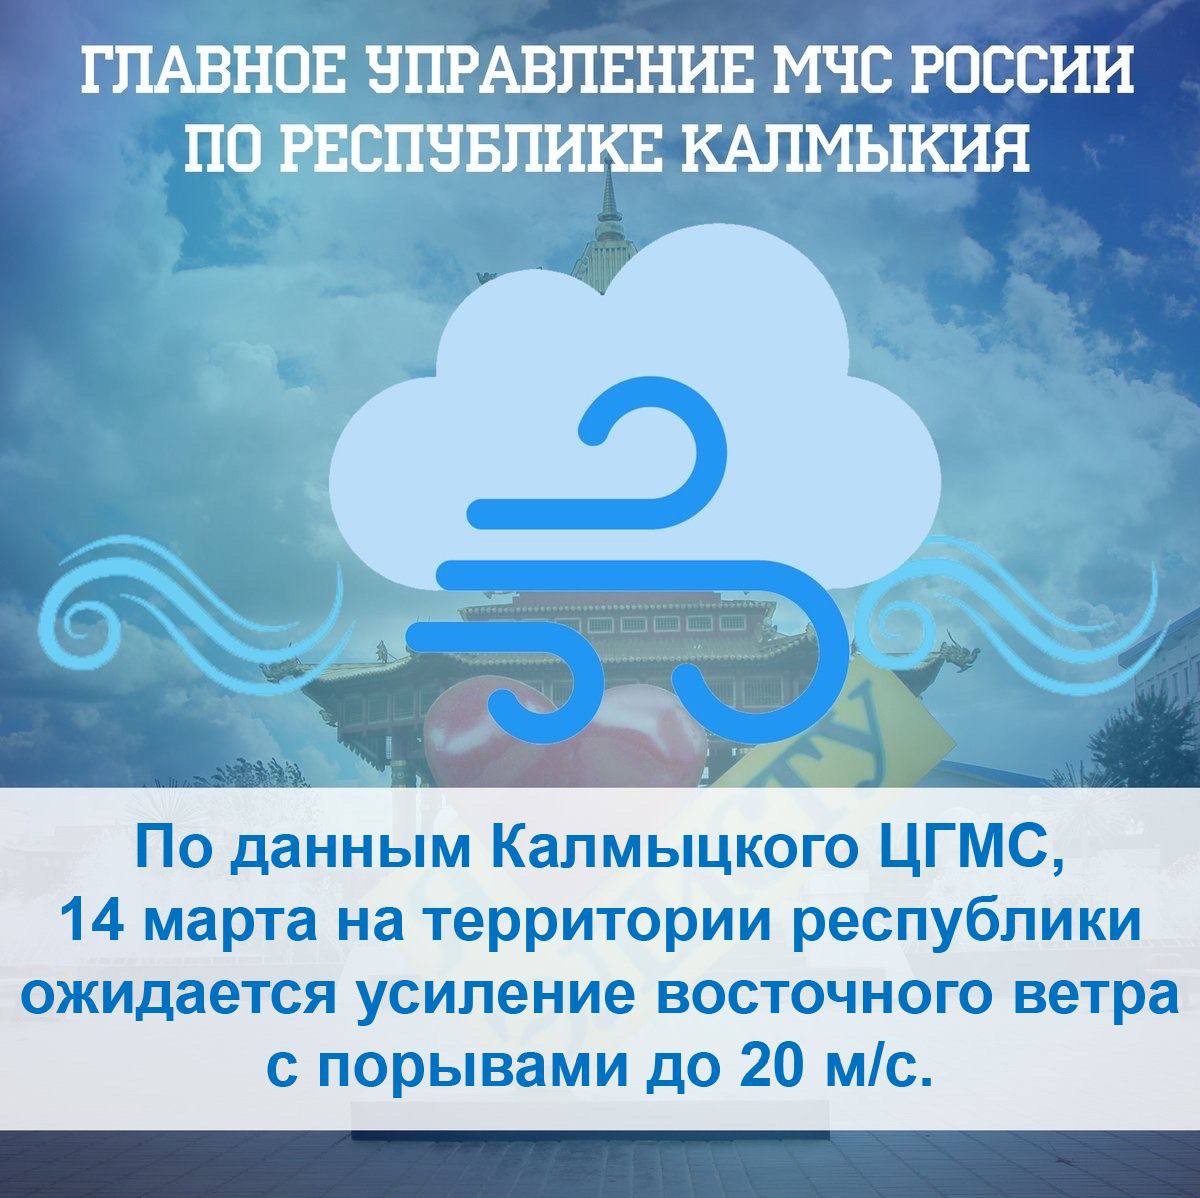 Завтра в Калмыкии ожидается усиление восточного ветра